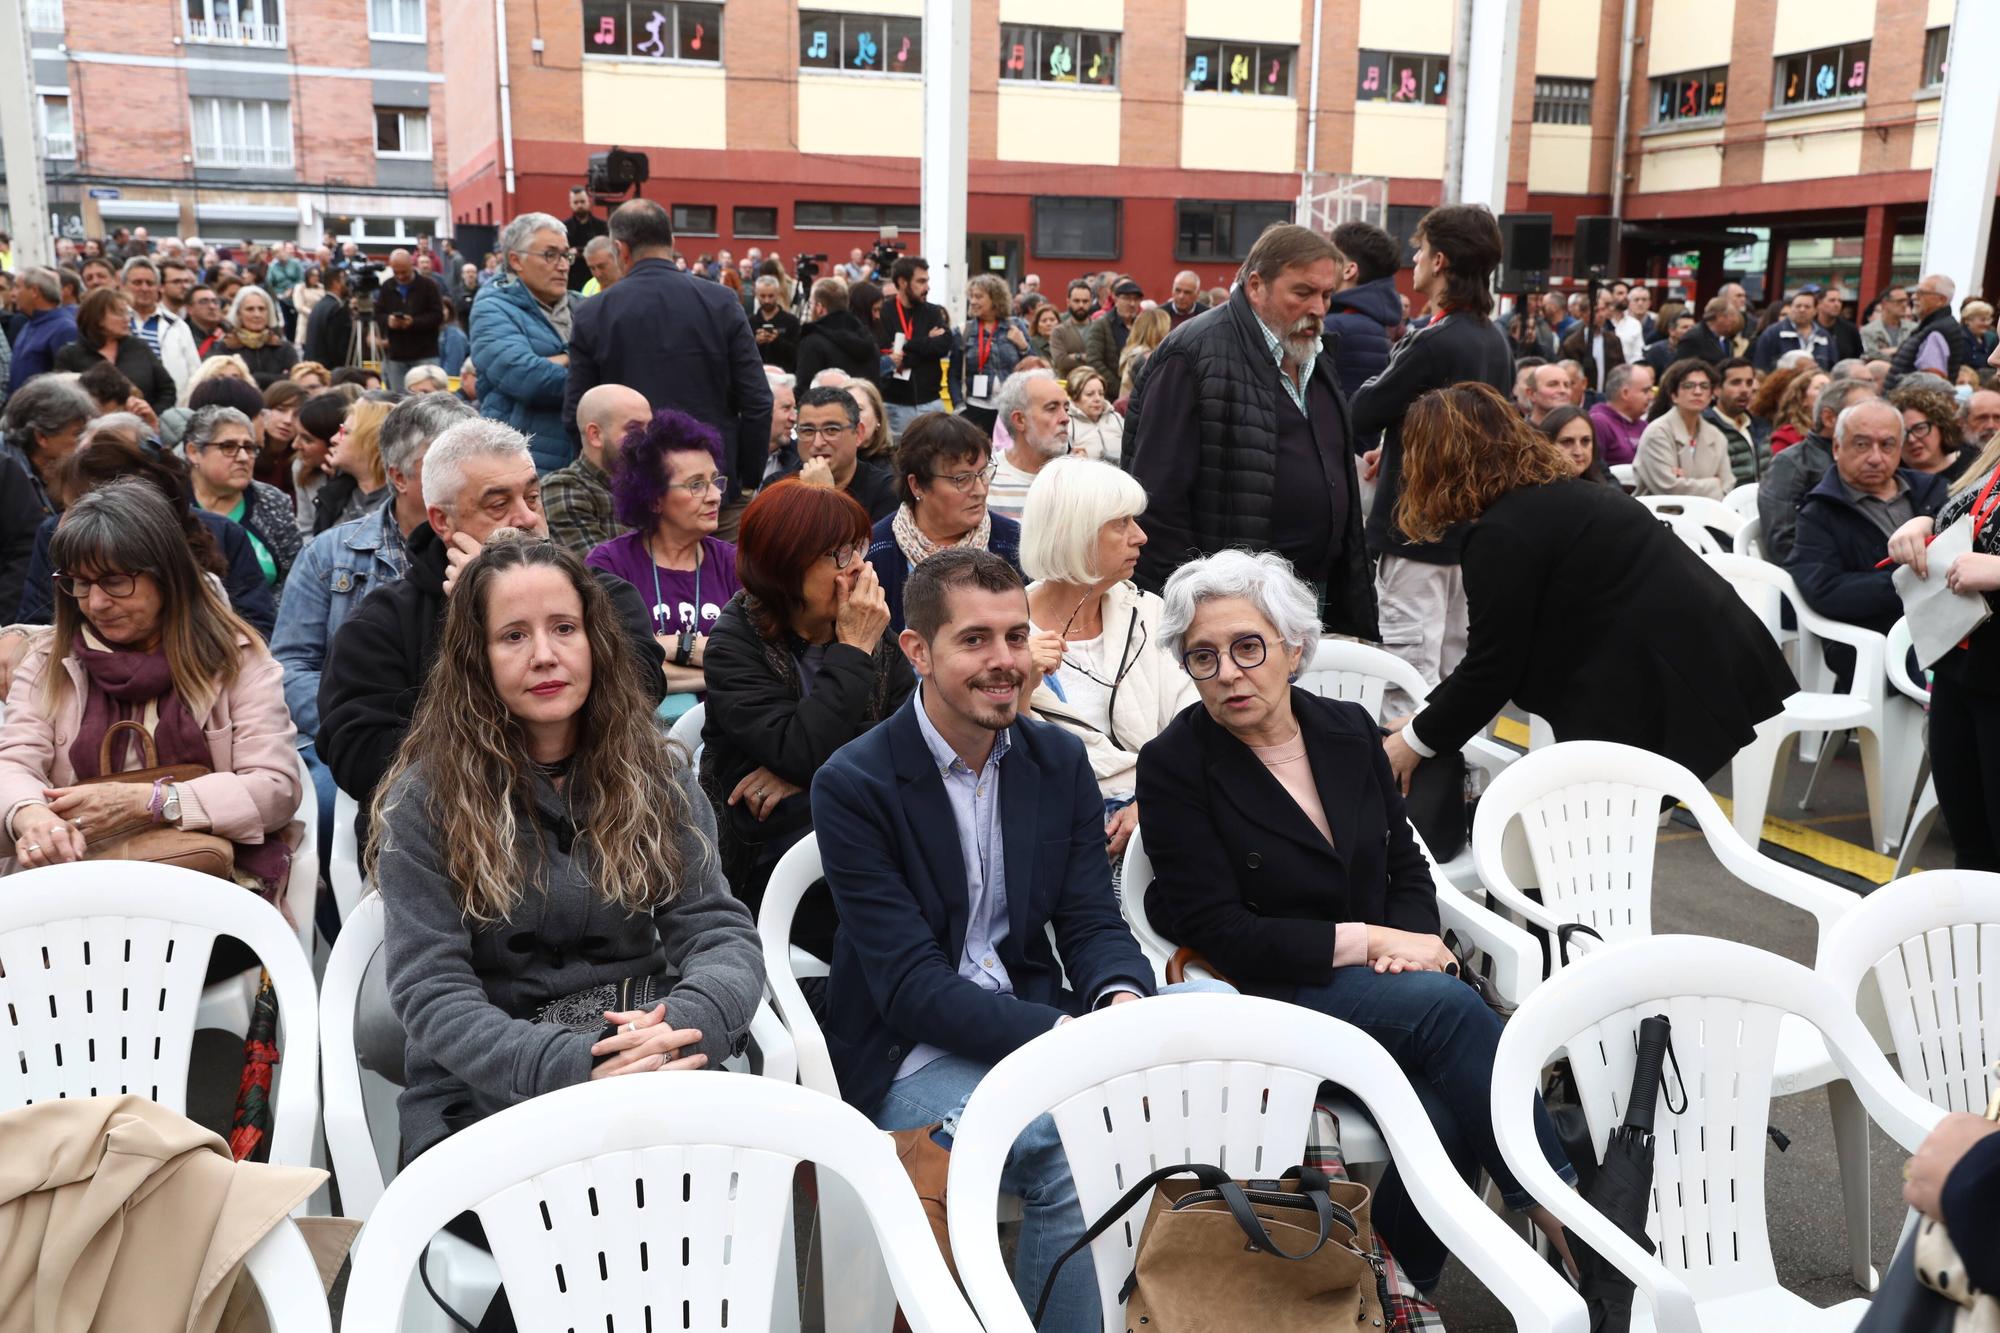 En imágenes: Así fue la visita de Yolanda Díaz a Asturias